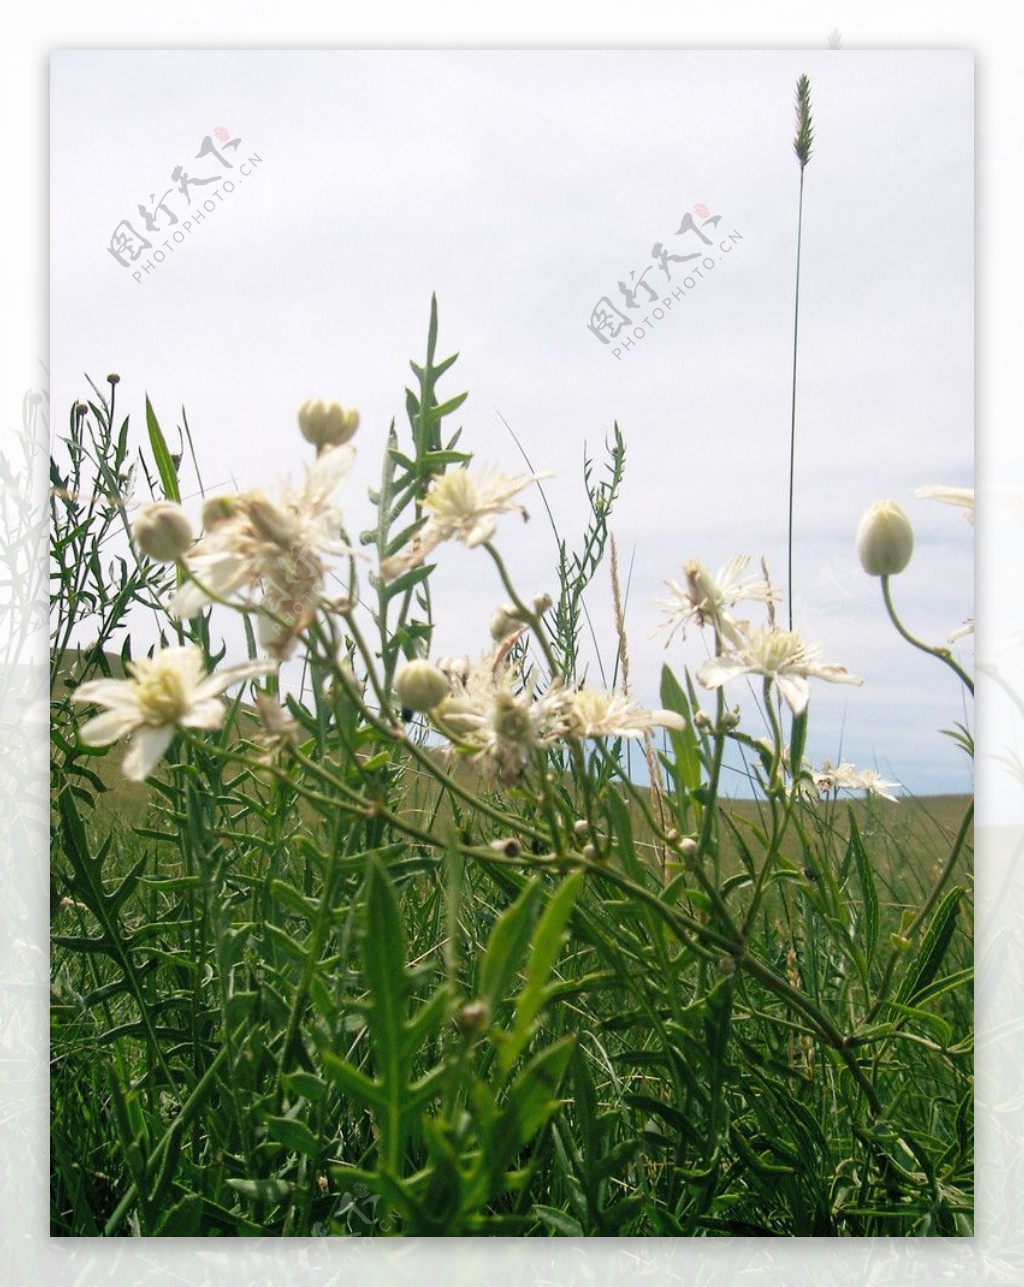 内蒙草原上生长的白色野花我不知道名字图片